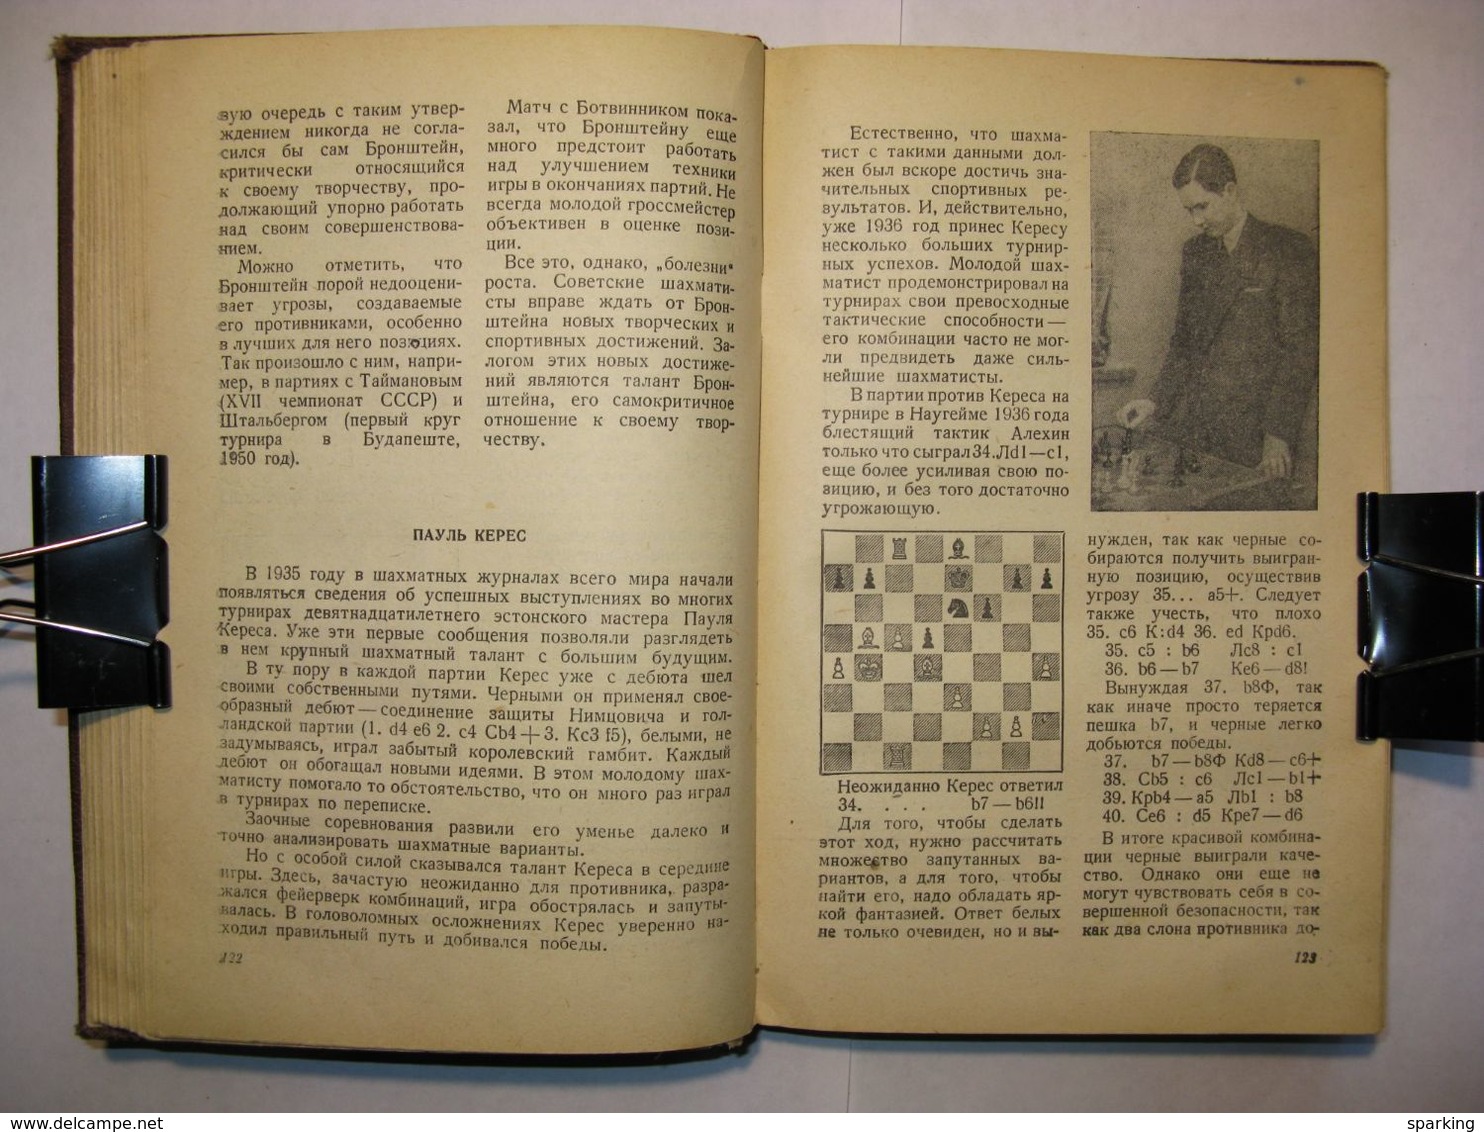 Soviet chess school by Kotov Yudovich 1951